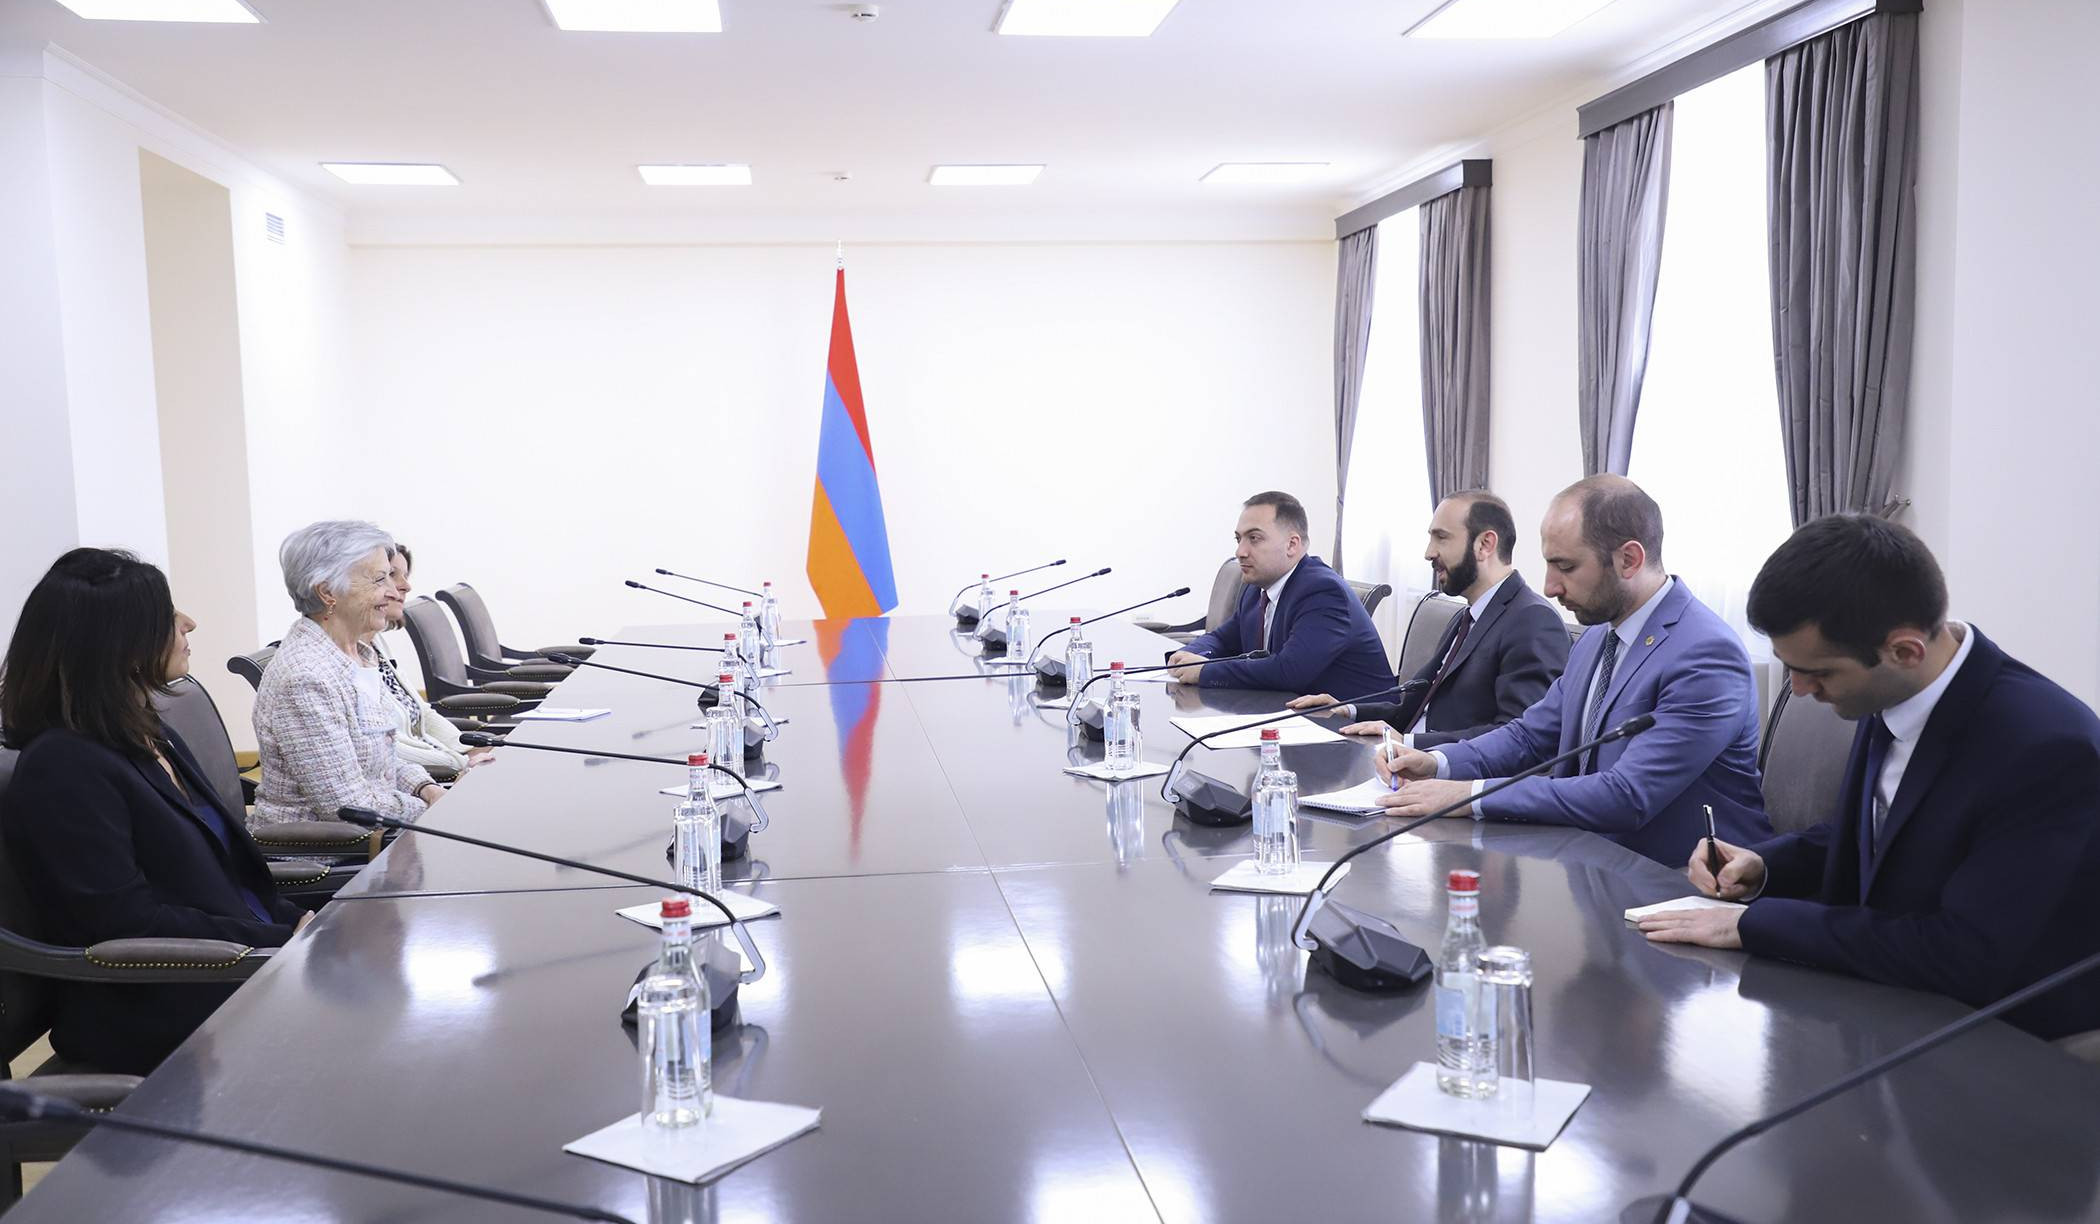 Վենետիկի հանձնաժողովի առաջարկությունները կարևոր նշանակություն ունեն Հայաստանի համար. Արարատ Միրզոյան